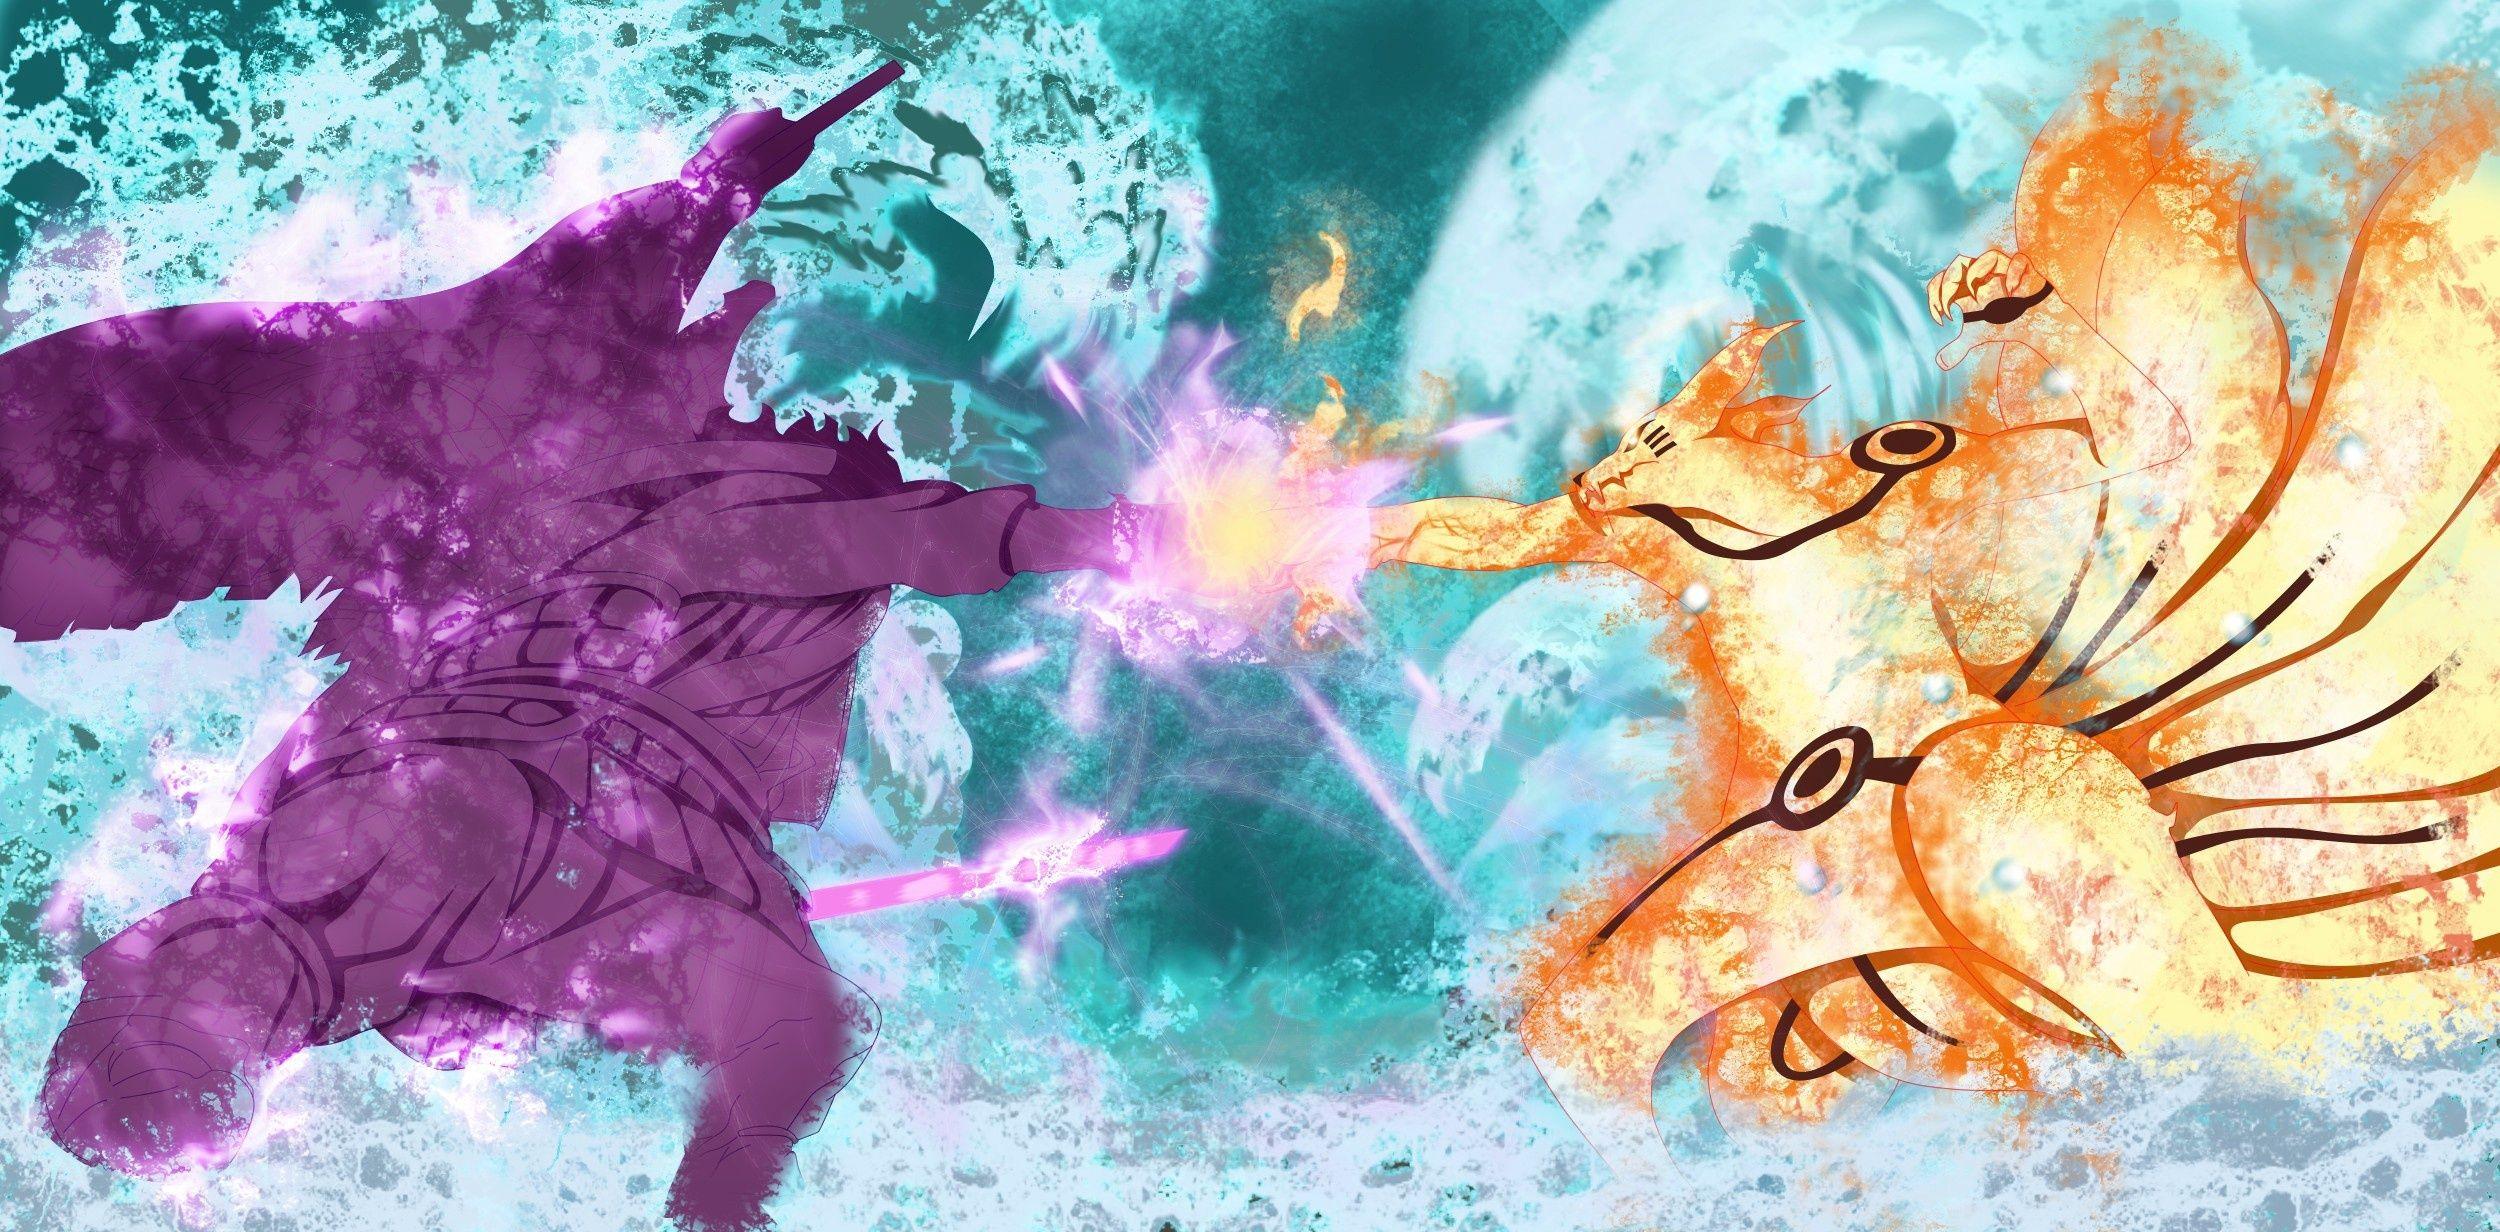 sasuke susanoo vs naruto kurama